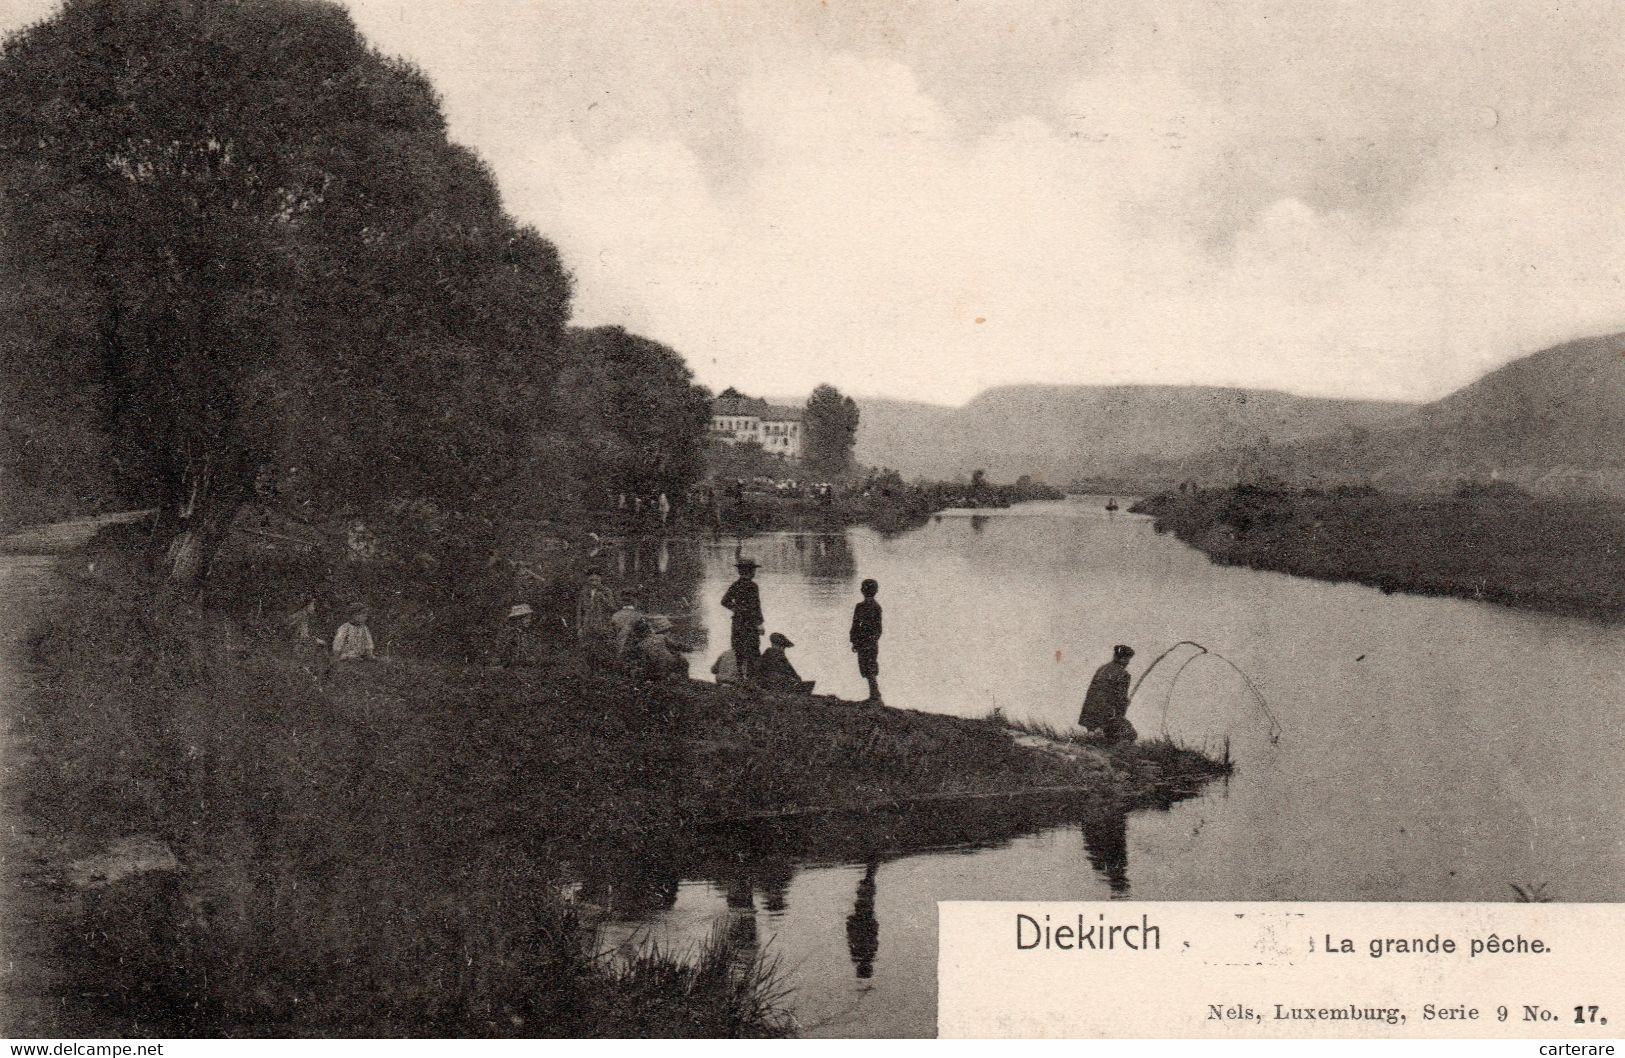 LUXEMBOURG,DIEKIRCH,1900,RARE,PECHEUR A LA LIGNE - Diekirch